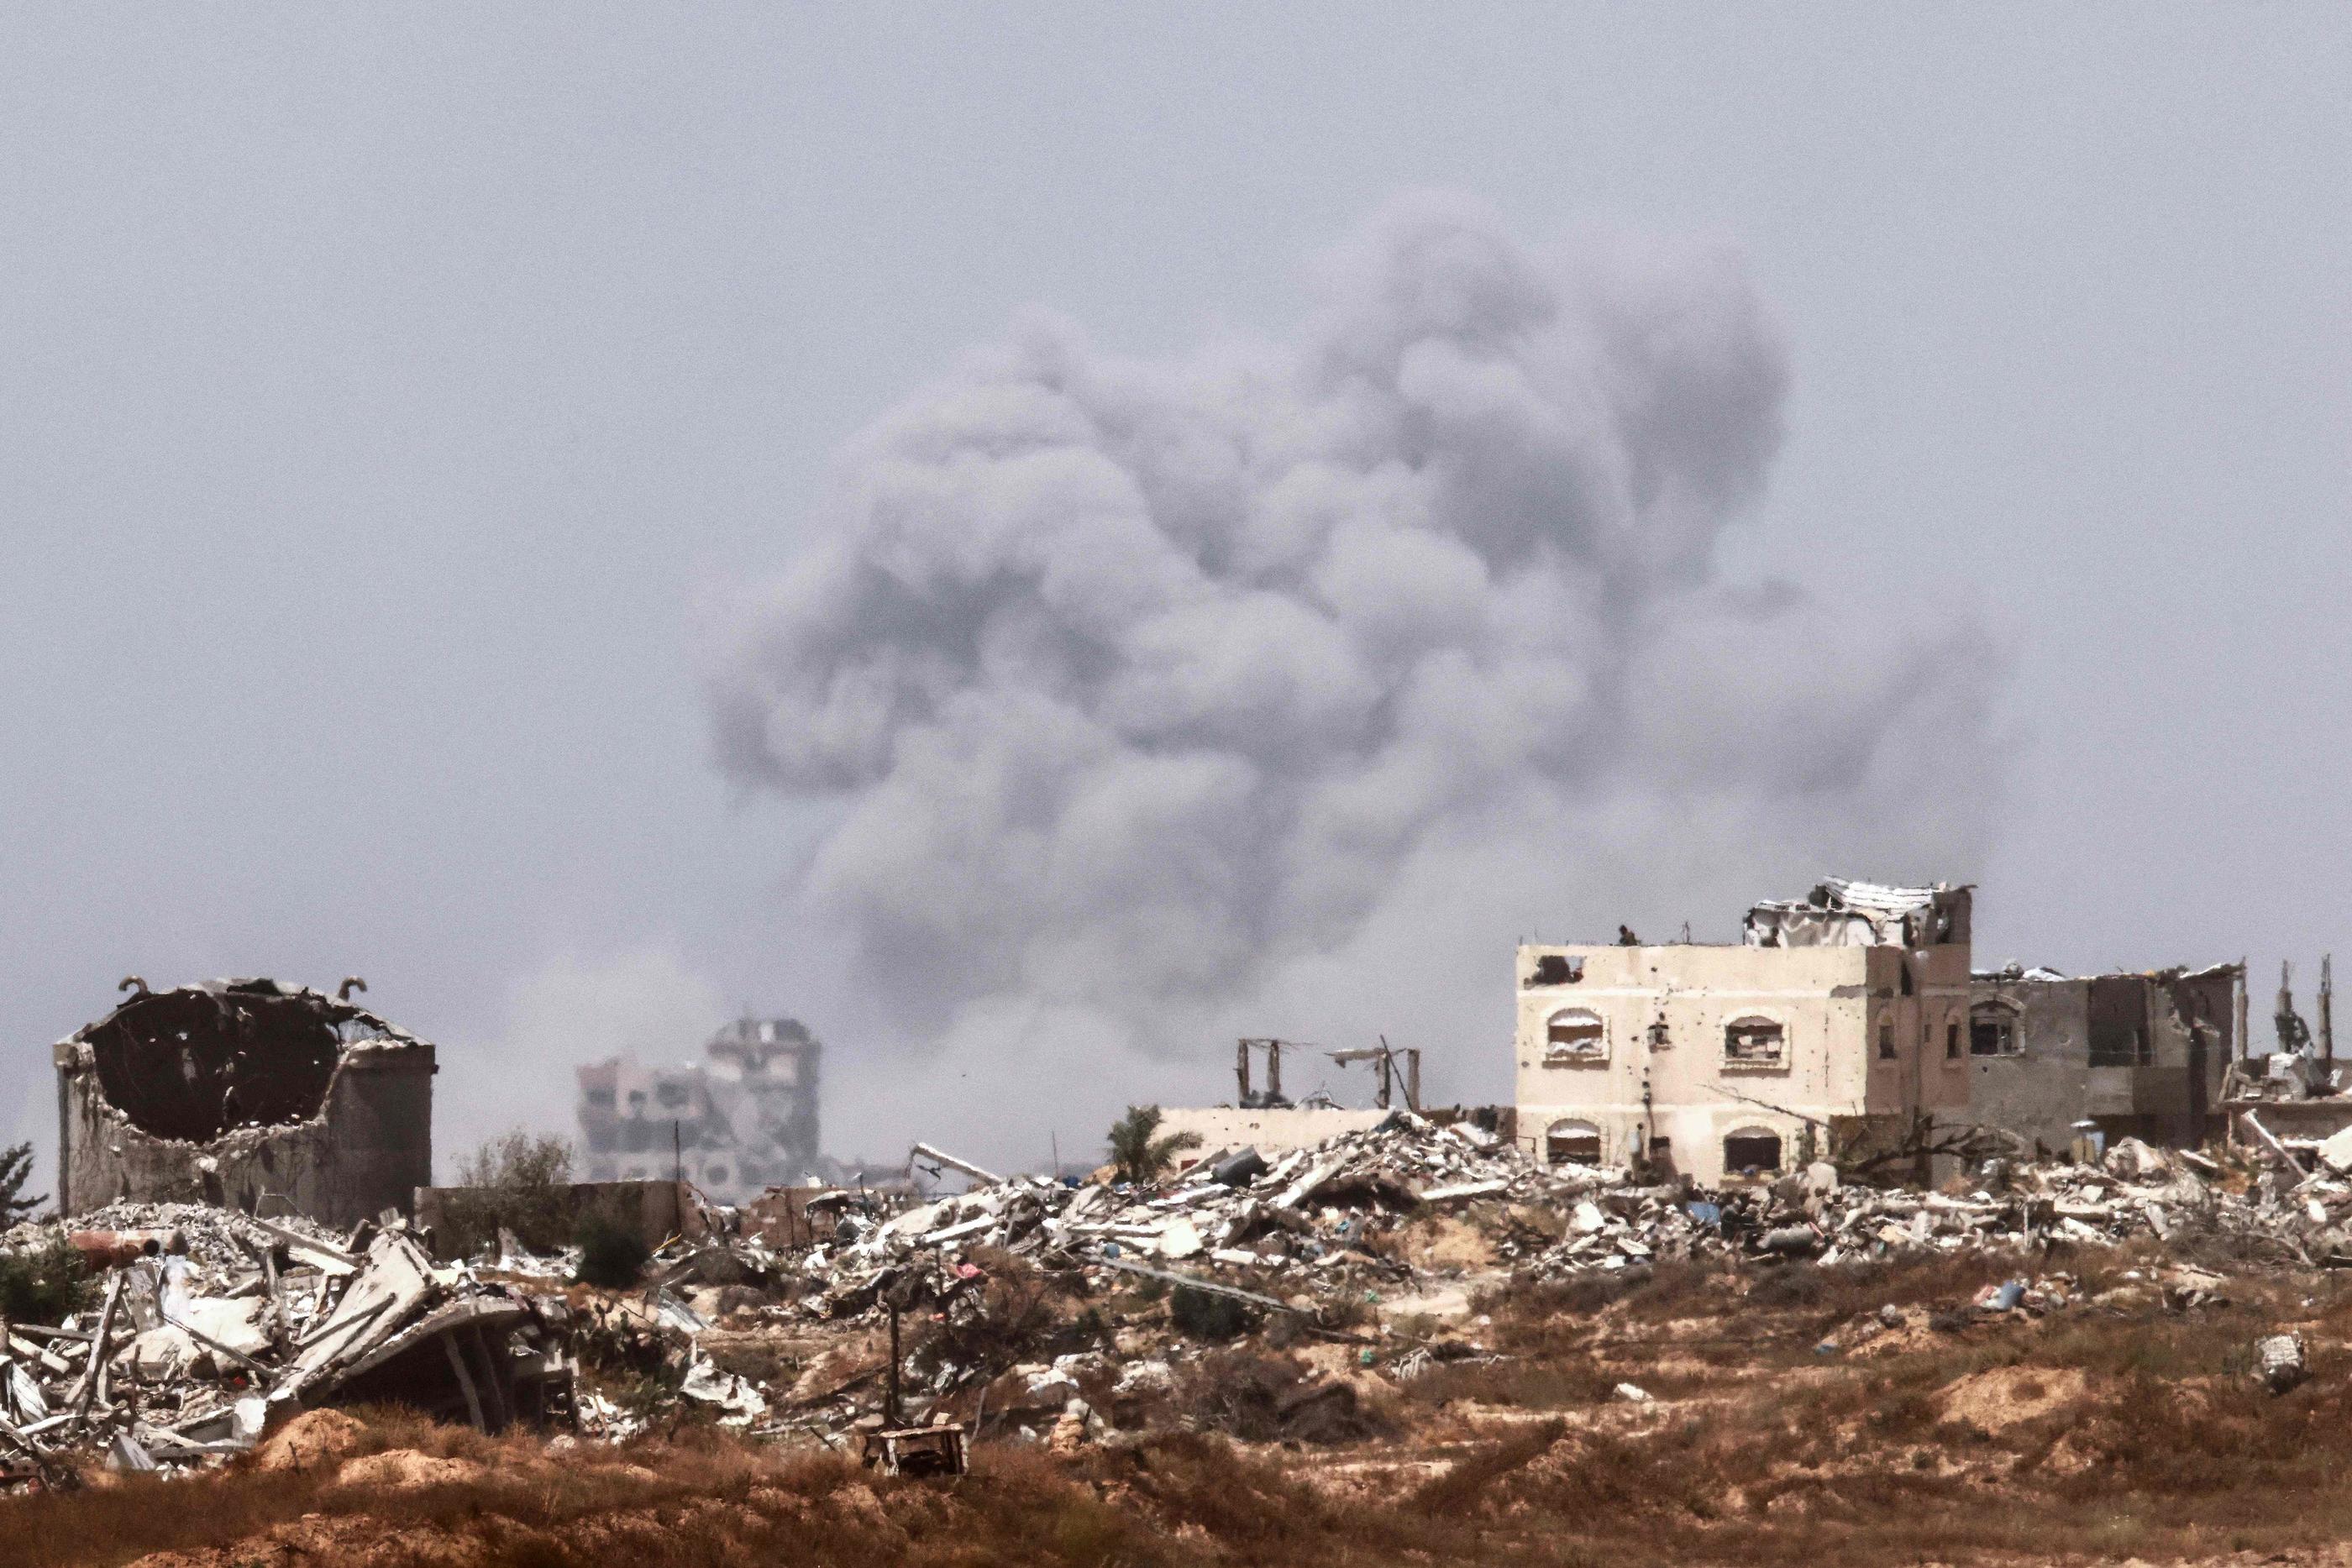 Une nouvelle proposition de trêve aurait été présentée au Hamas, ce lundi, prévoyant un cessez-le-feu de 40 jours dans la bande de Gaza (photo) et la libération d’otages et de prisonniers. AFP/Jack Guez